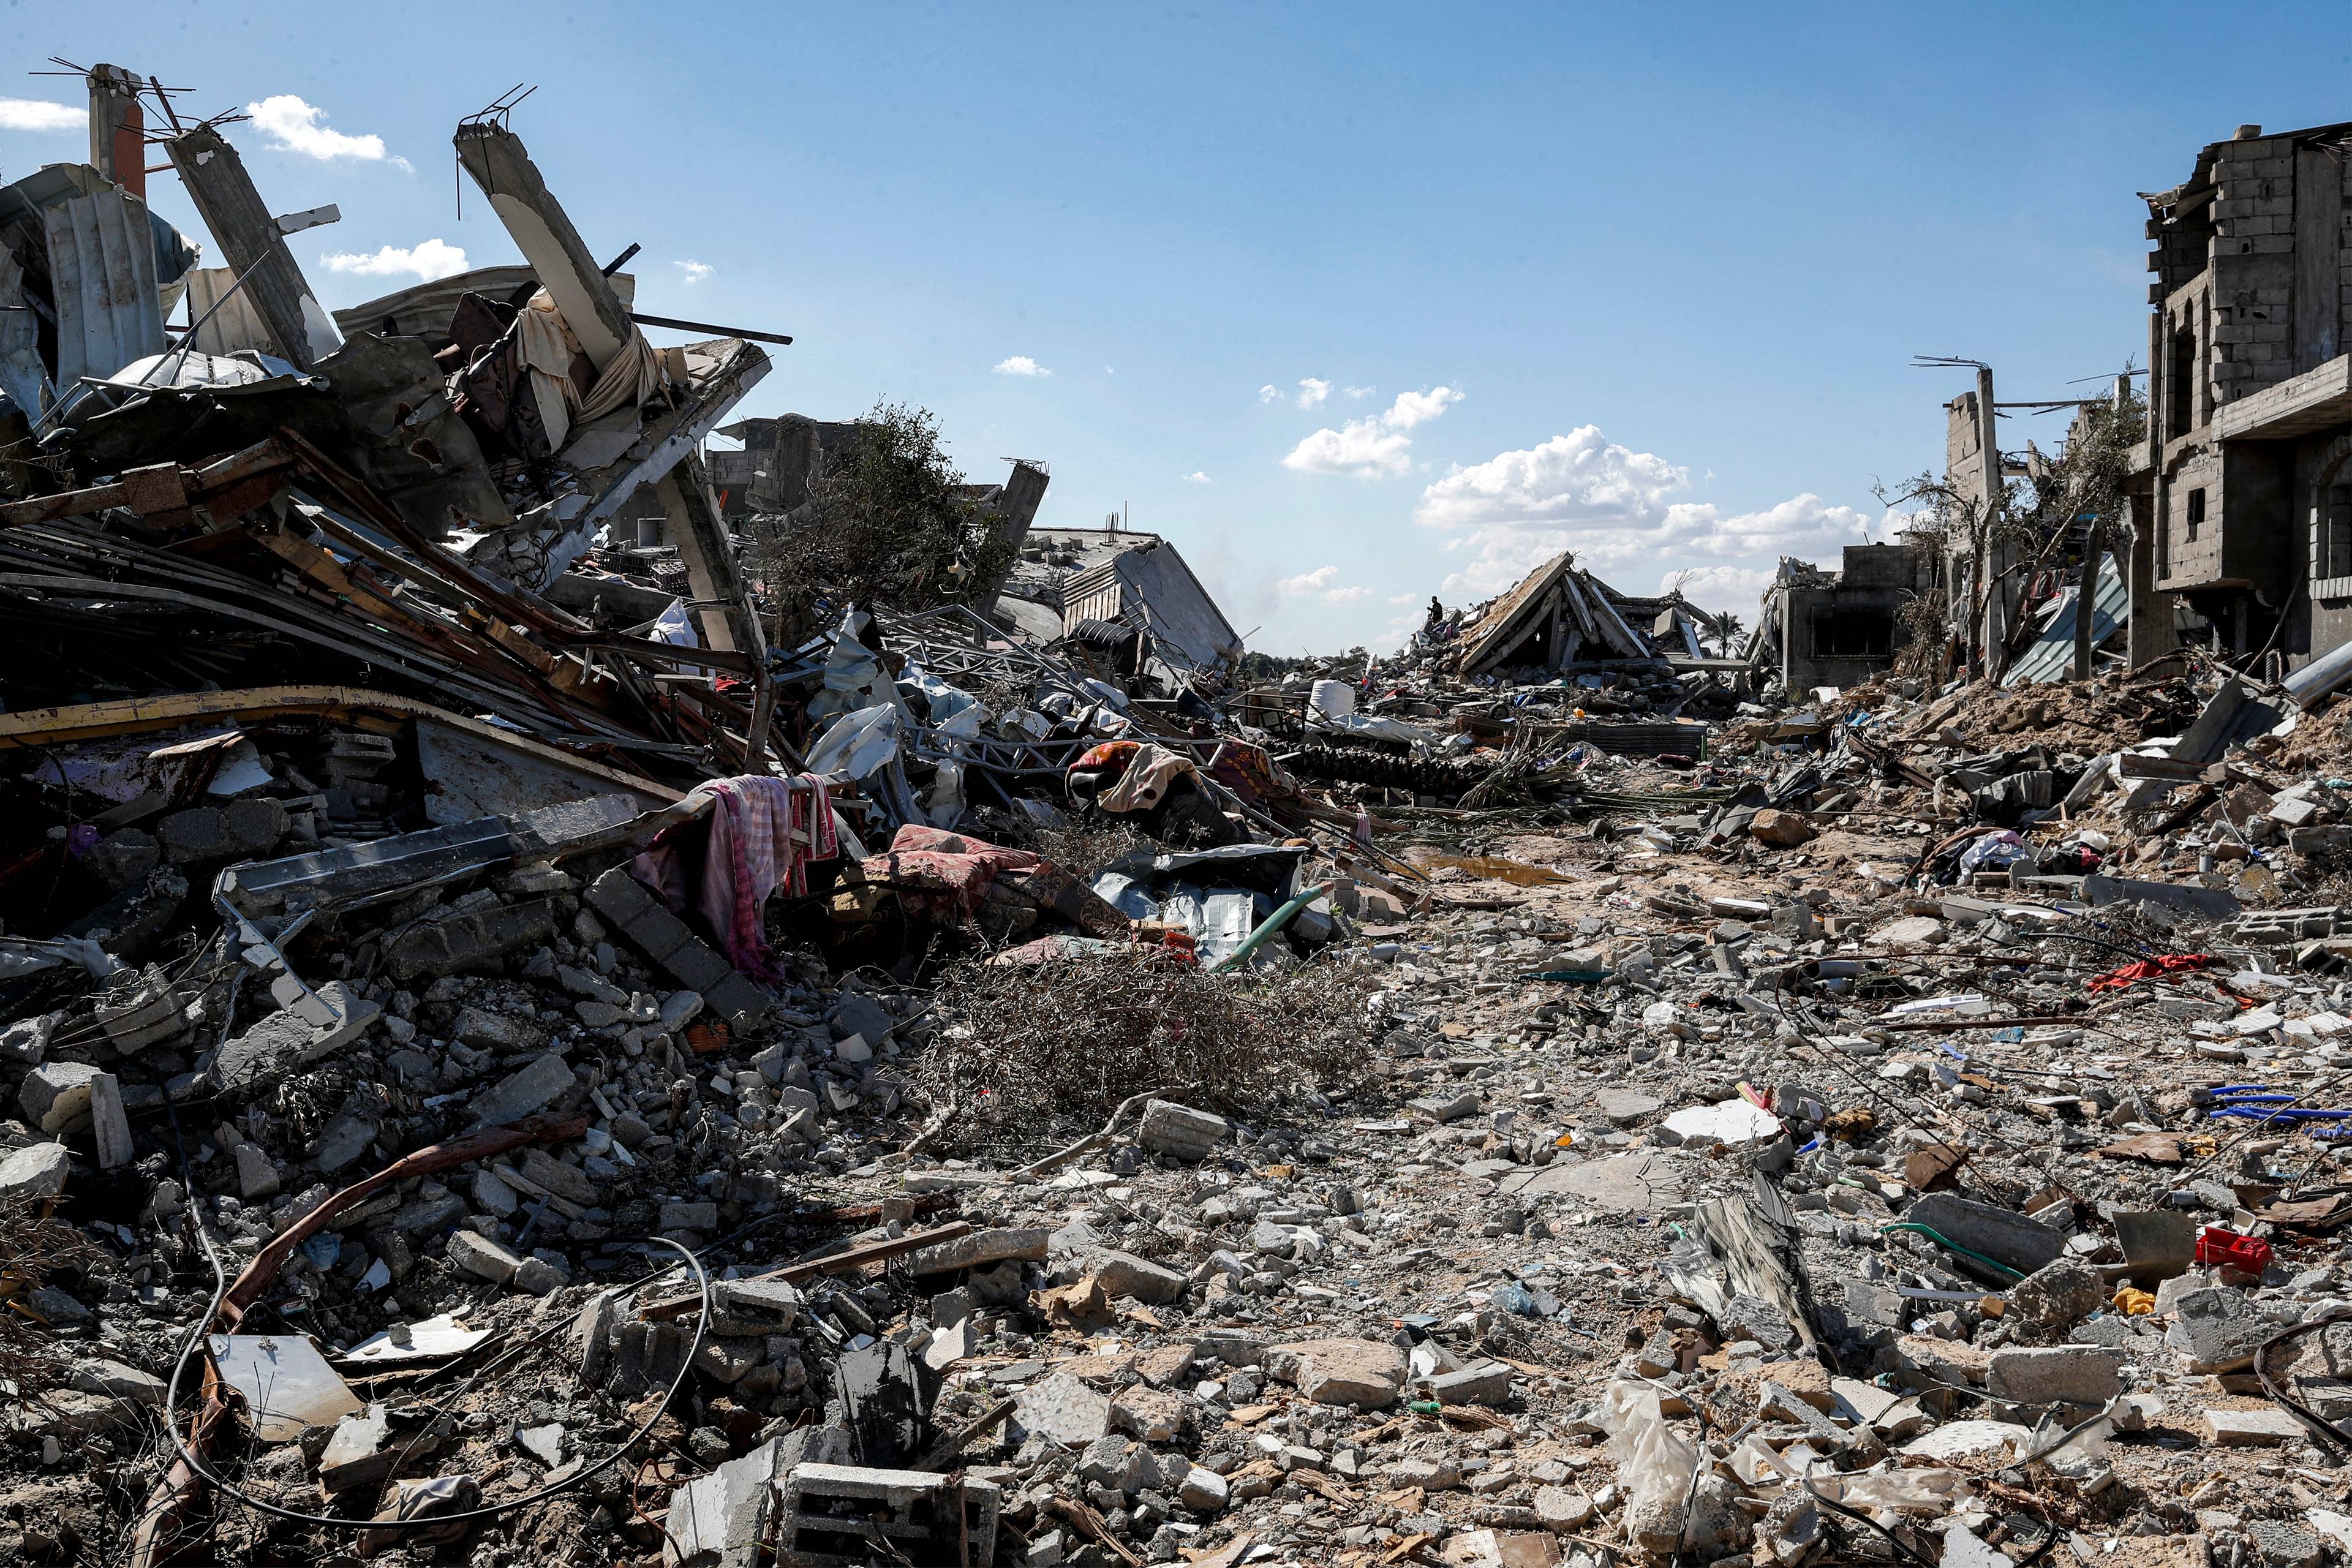 Obraz zniszczeń w Gazie. W tle widać niebieskie niebo, na pierwszym planie kompletnie zniszczona ulica i ruiny budynków z obu stron.